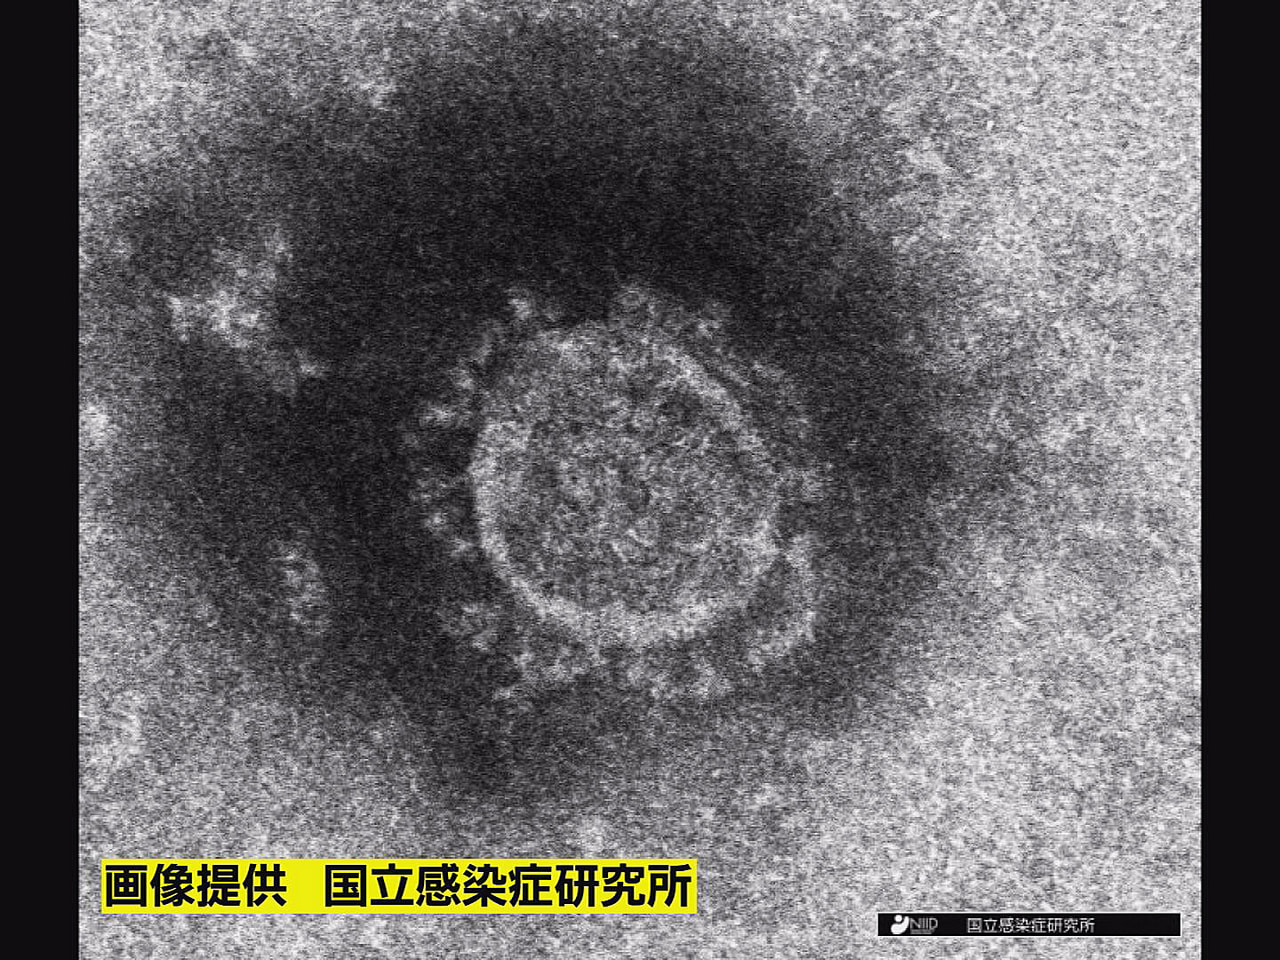 岐阜県は７日、新型コロナウイルスの新規感染者が６４６人確認されたと発表しました。...